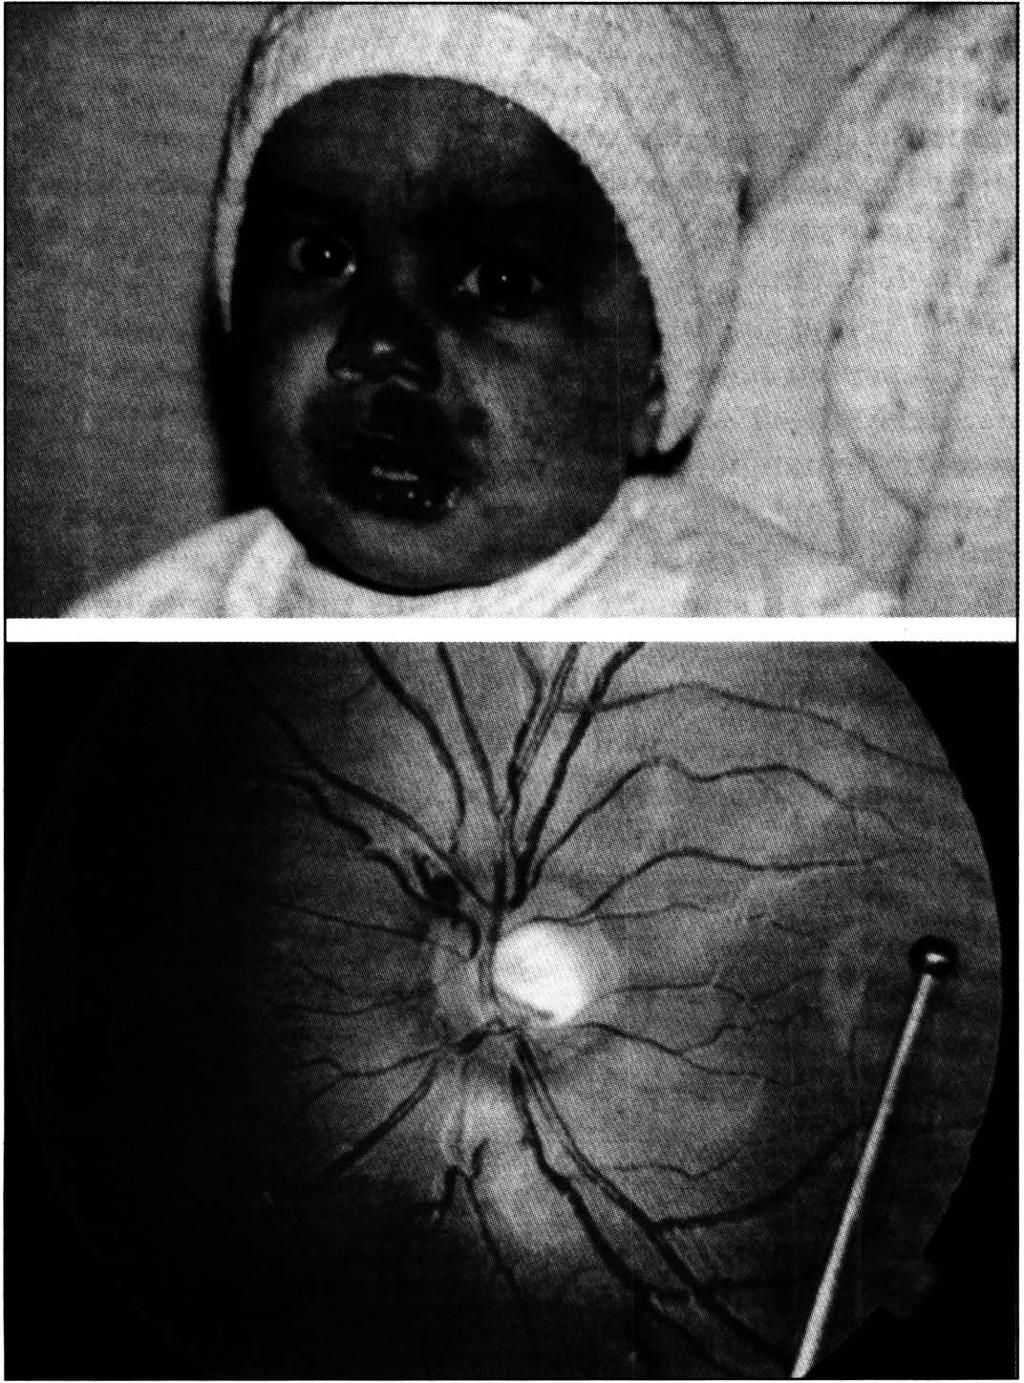 Ultra-som ocular na síndrome de Sturge- Weber O hemangioma difuso de coróide não é muito freqüente e a incidência exata deste tipo de hemangioma em pacientes com a síndrome de Sturge-Weber não está